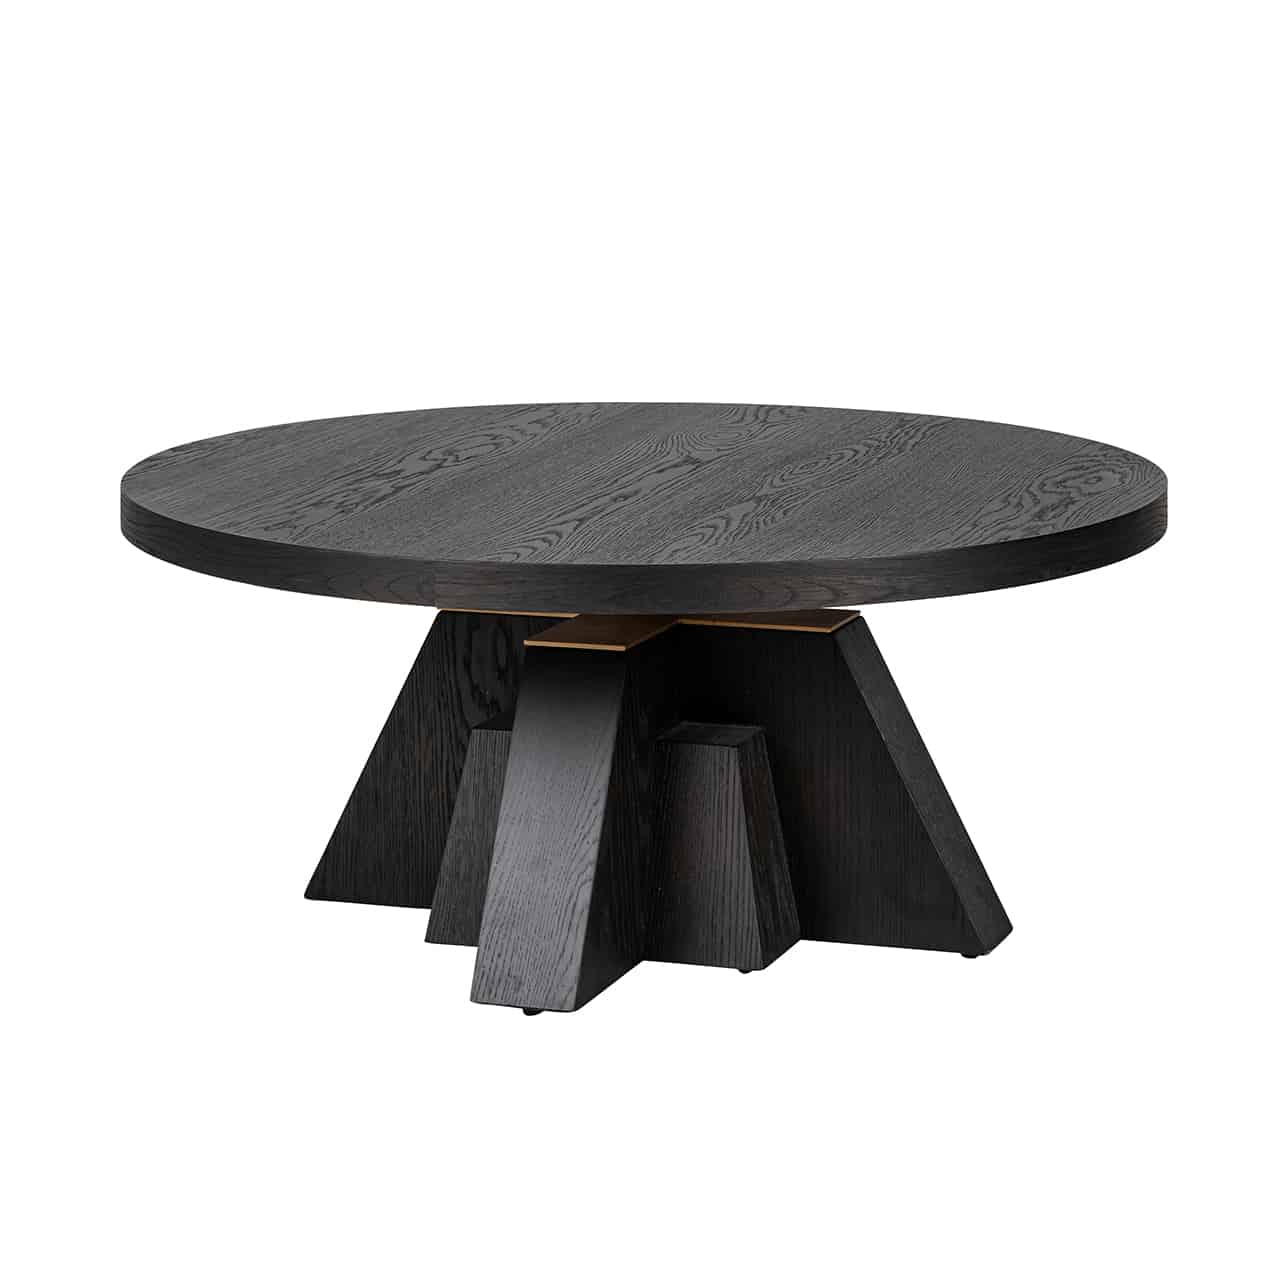 Schwarzer Couchtisch mit einer runden Platte auf einem Fuß, bestehend aus gekreuzten nach außen stehenden dicken Holzplanken, zwischen Holzplanken und Tischplatte eine goldene Abdeckung.